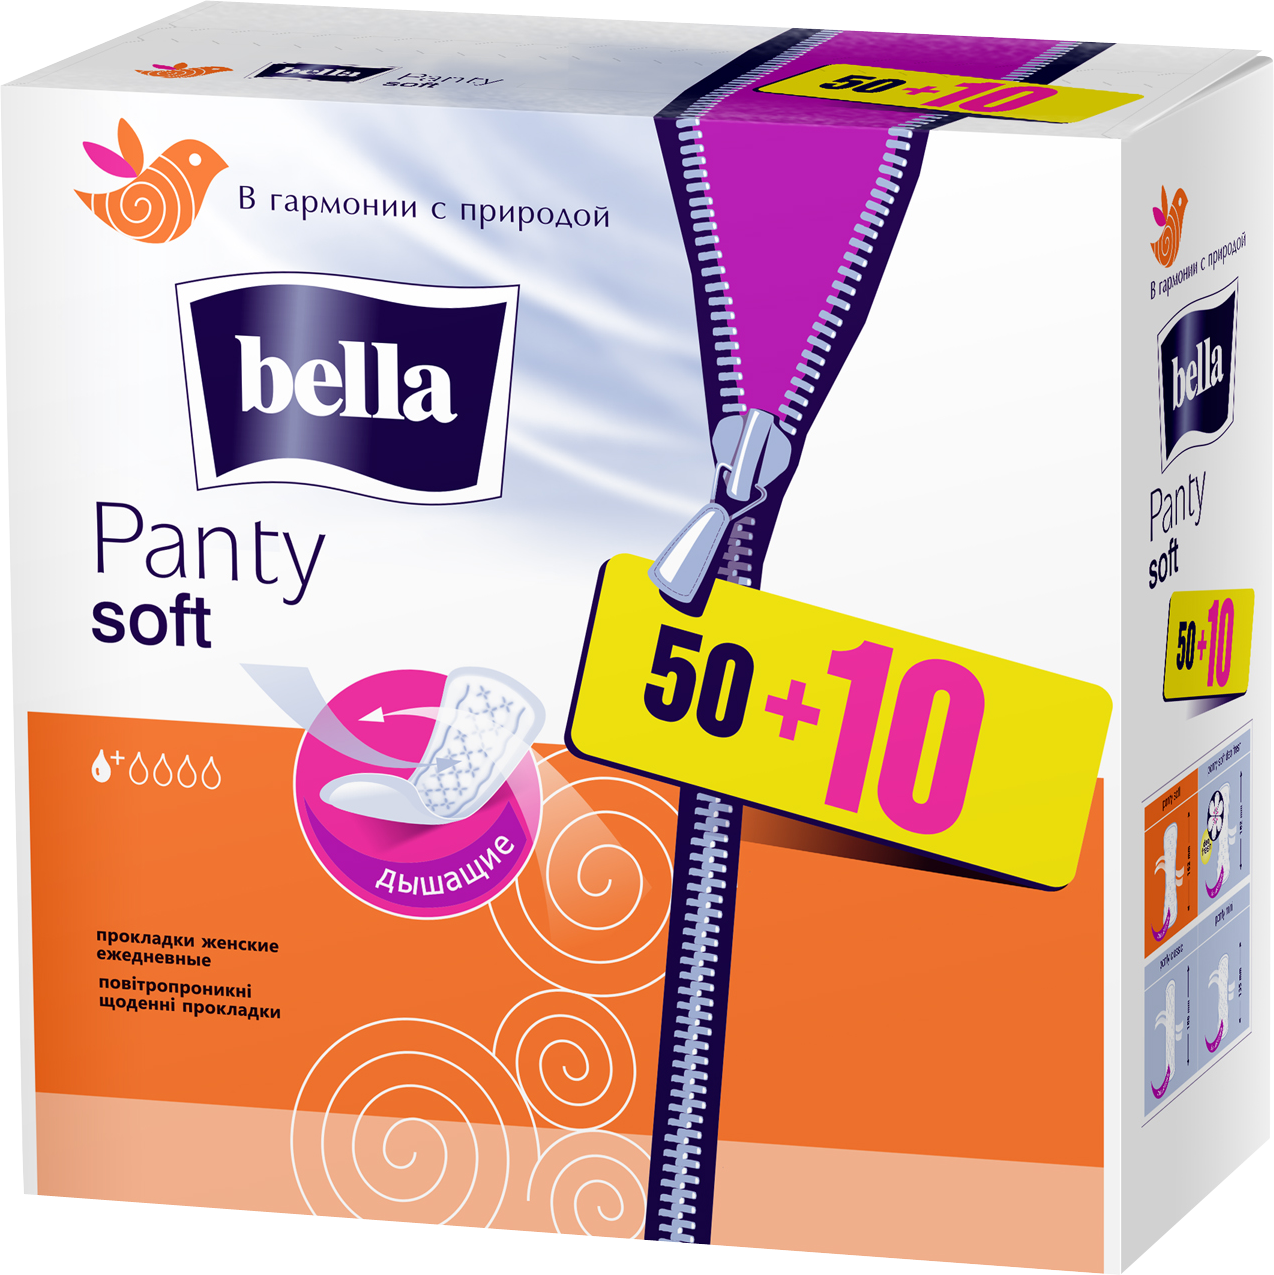 Щоденні прокладки Bella Panty Soft 50+10 шт. - фото 1